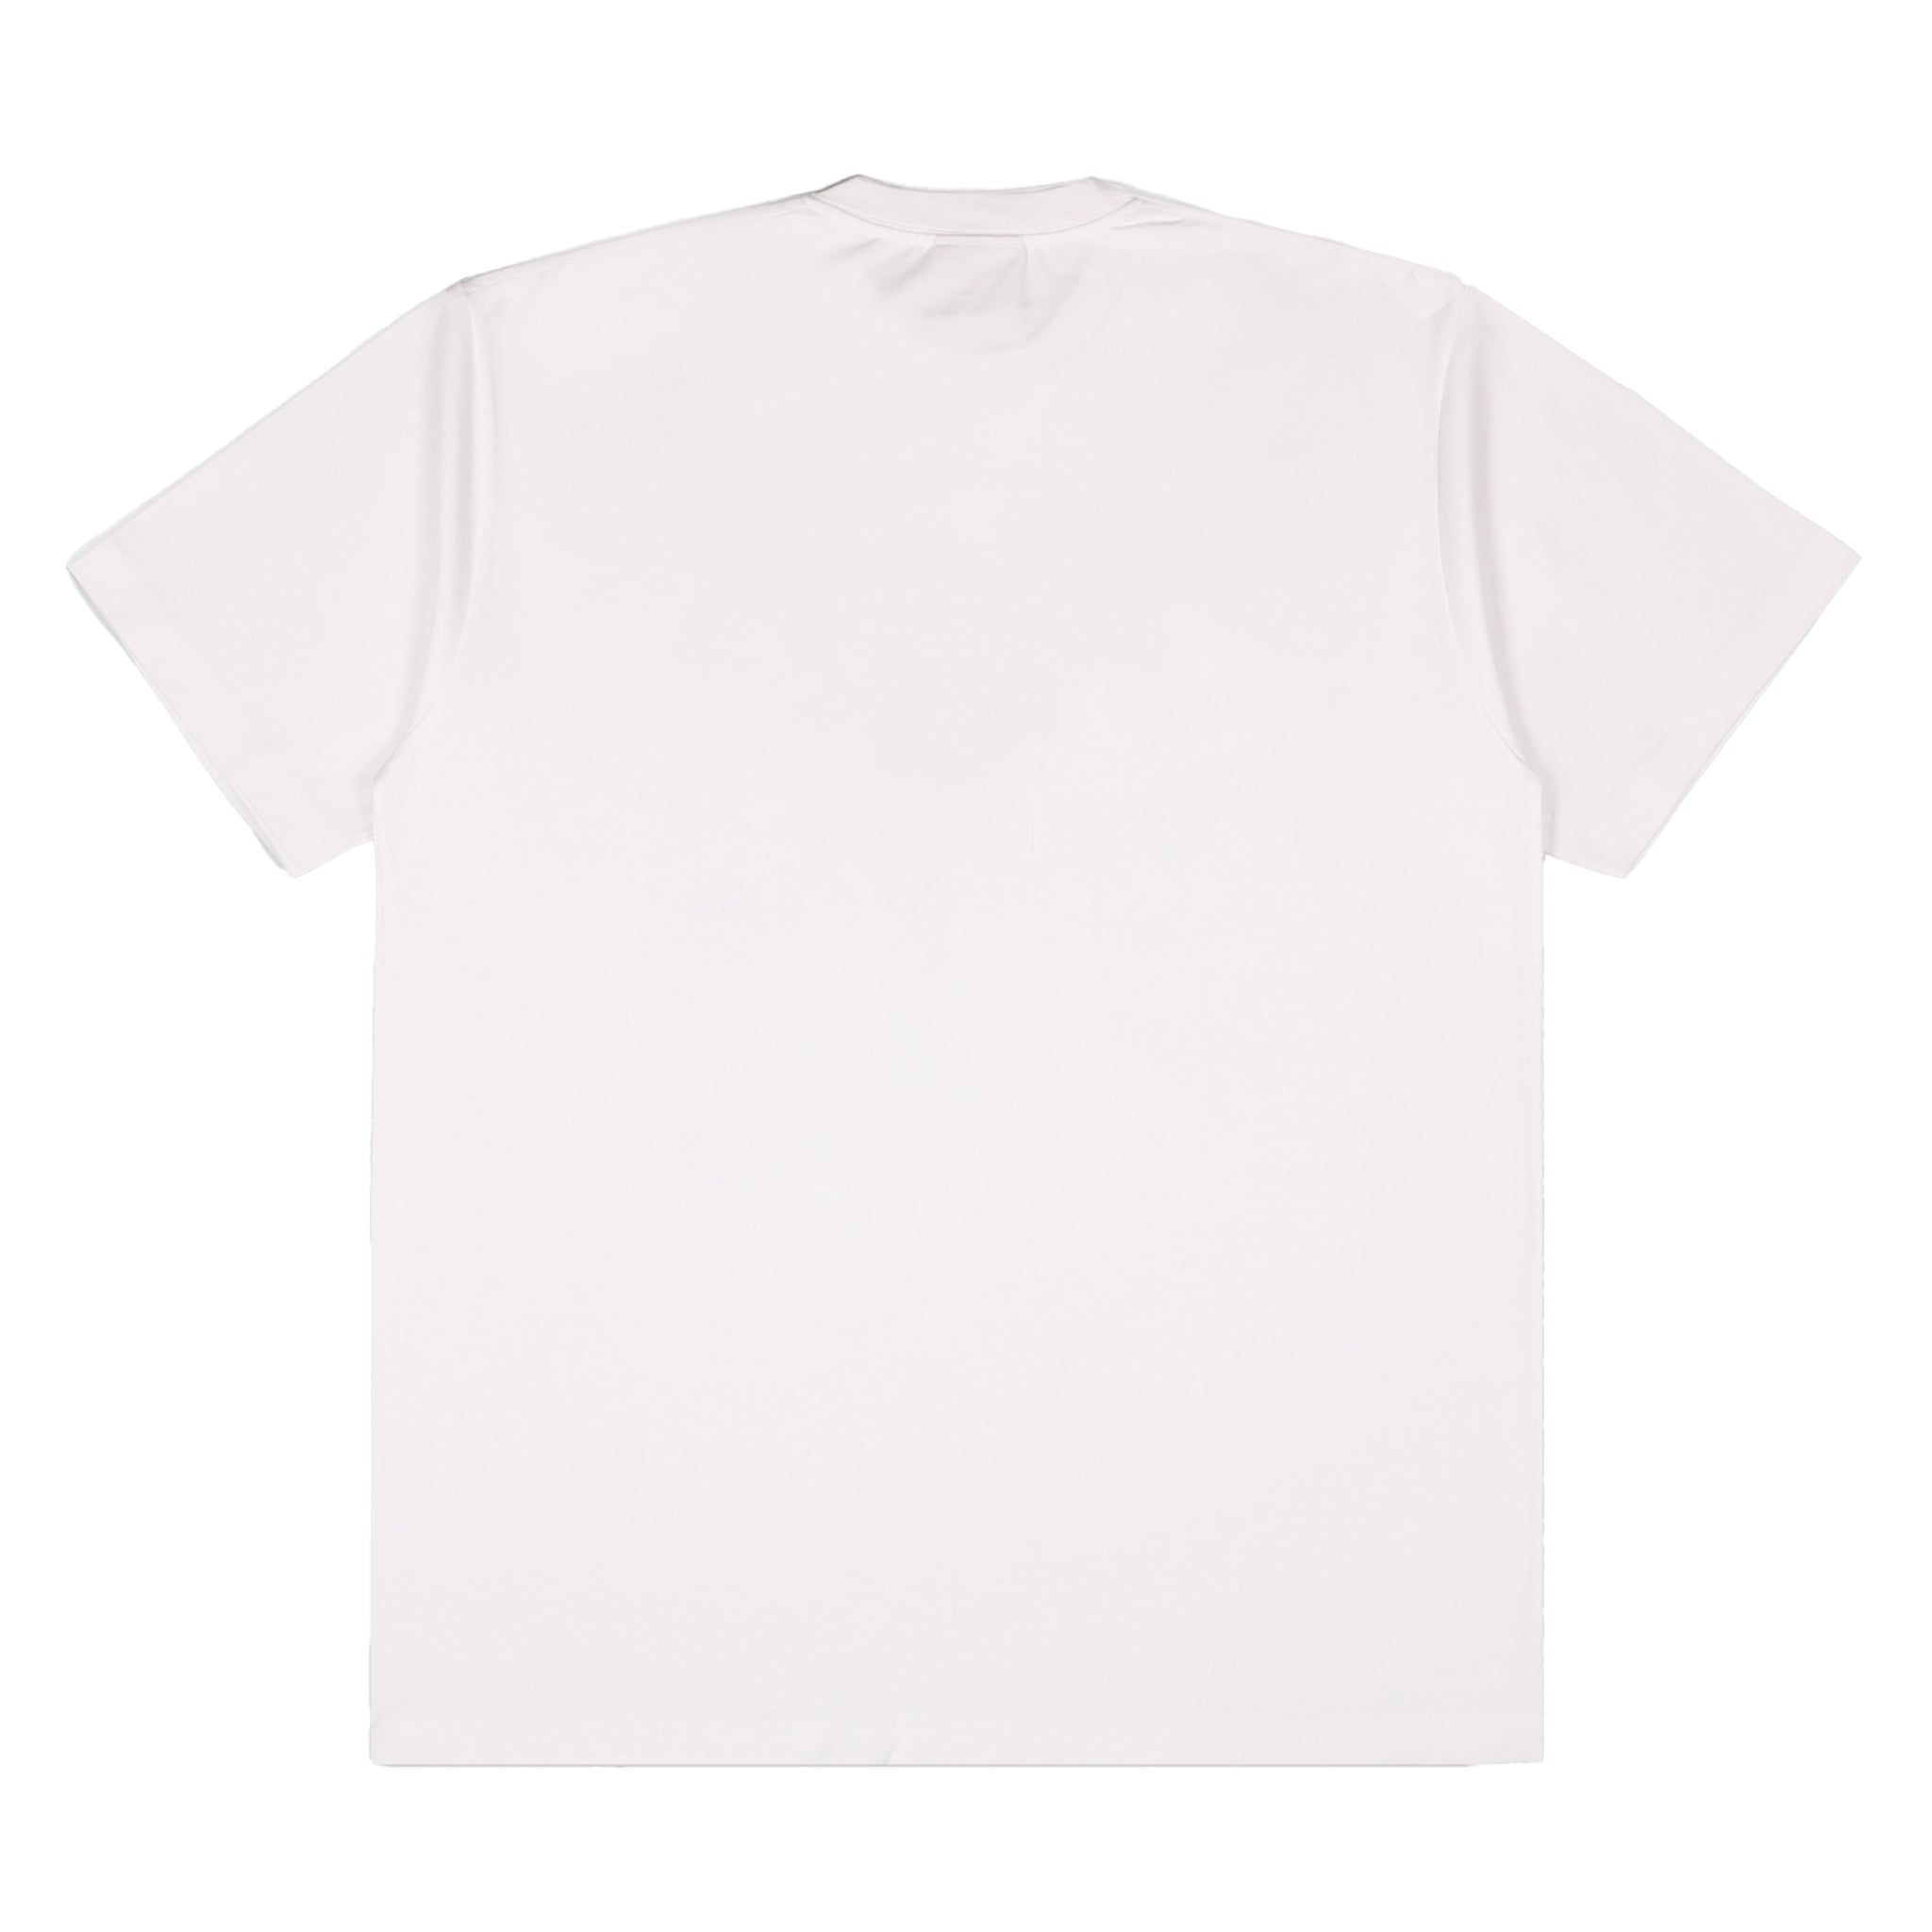 Real Bad Man Crimewave TM T-Shirt - White